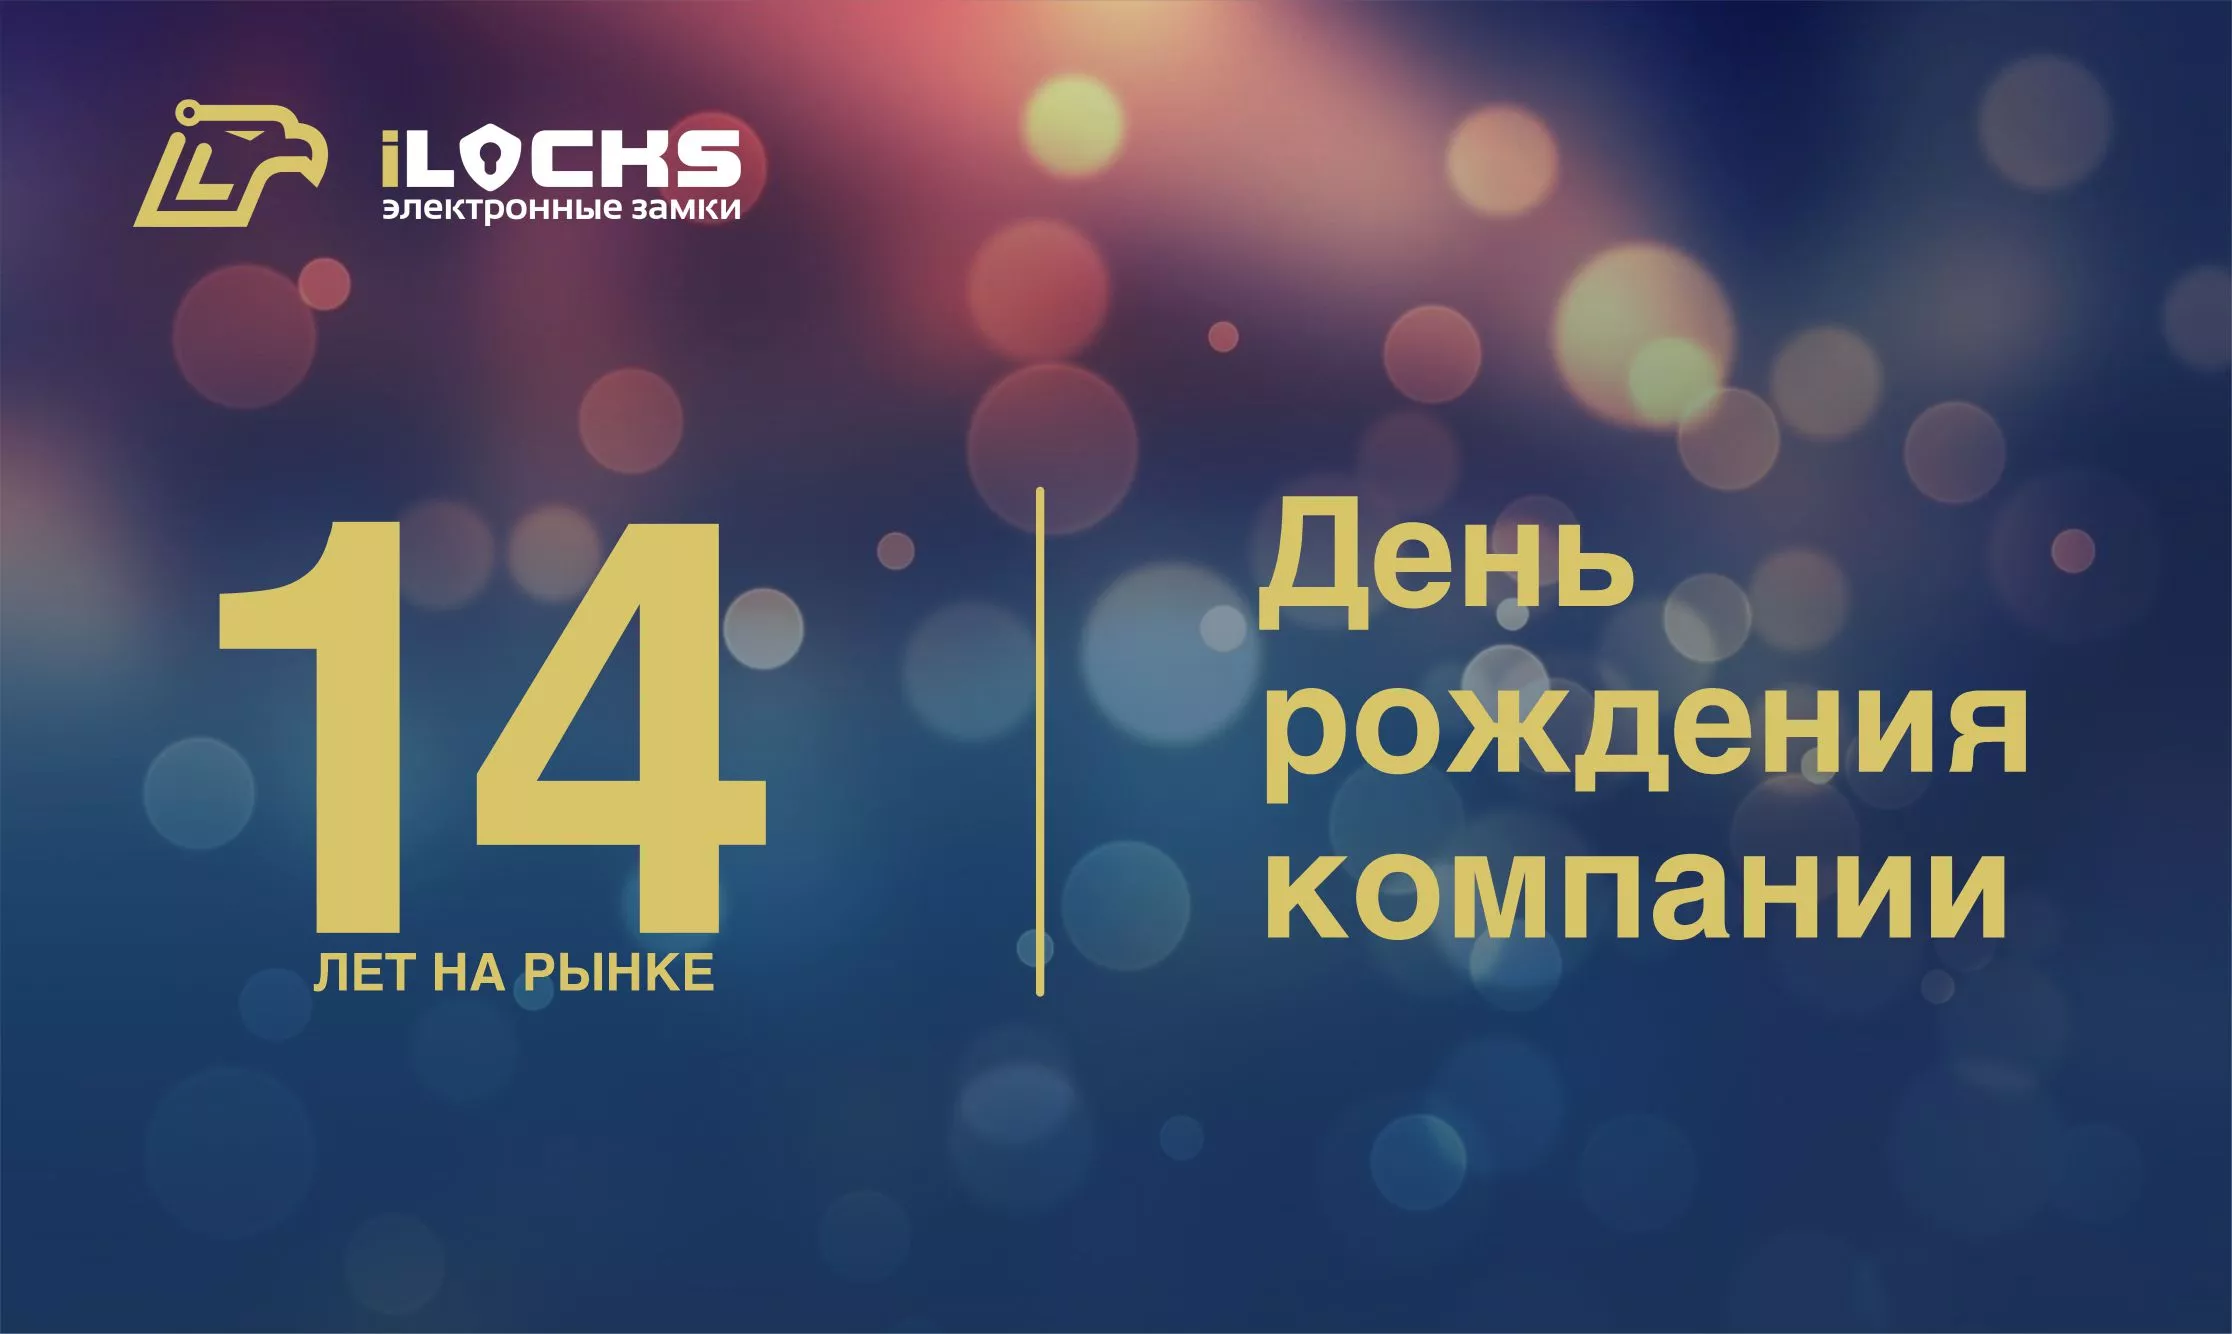 Разработчик и производитель электронных замков iLocks 14 лет на российском рынке.